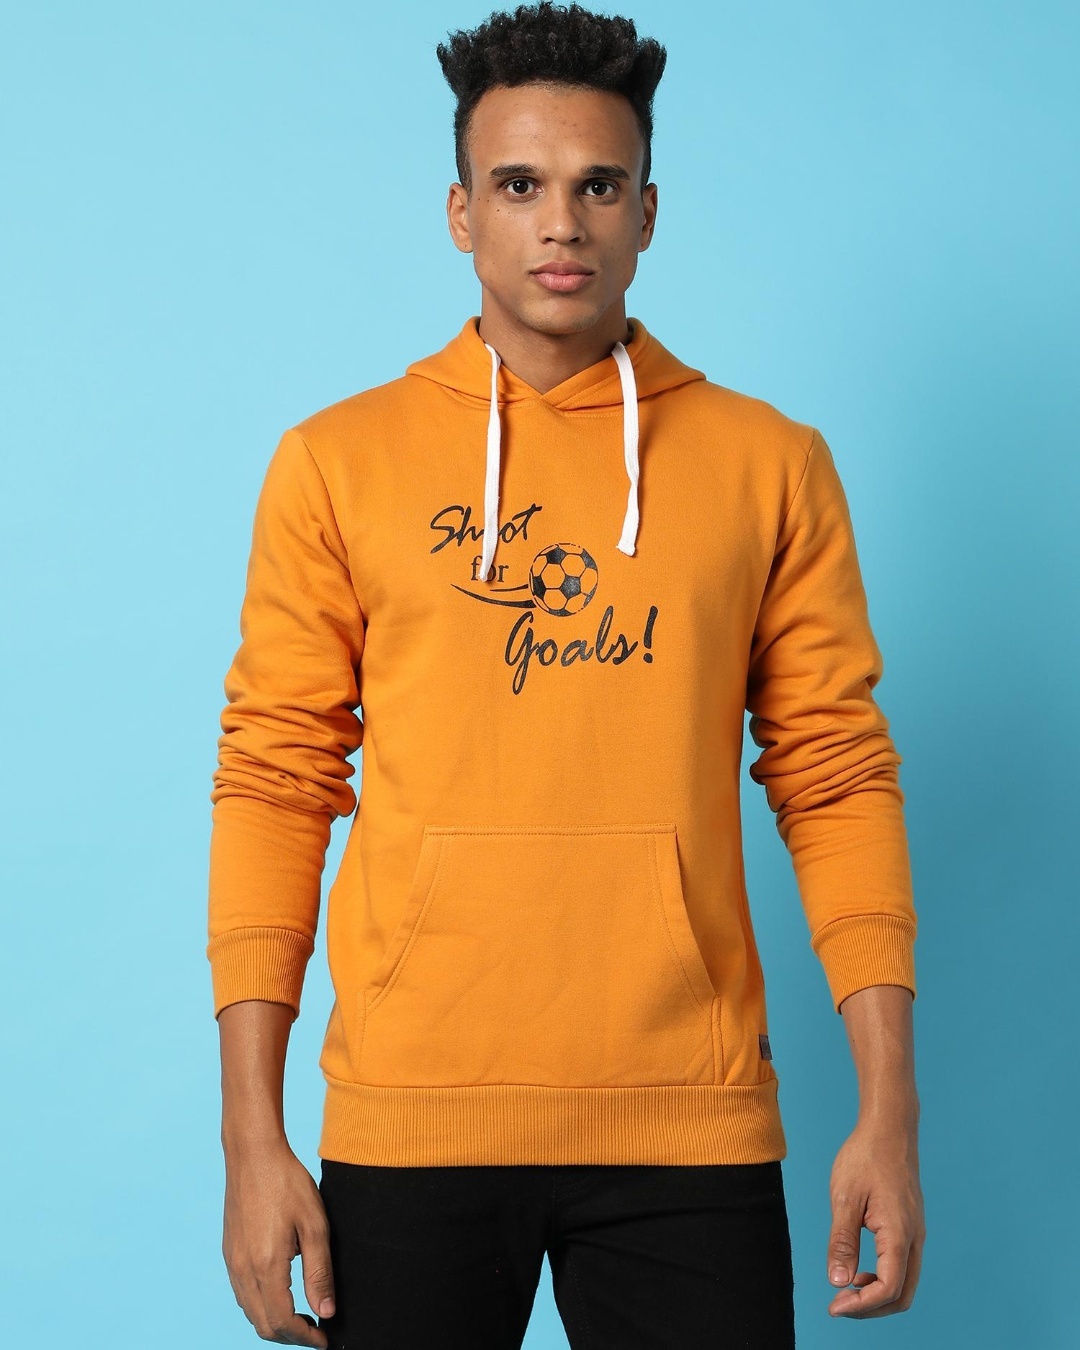 Buy Men's Yellow Shoot For Goals Typography Hooded Sweatshirt Online at ...